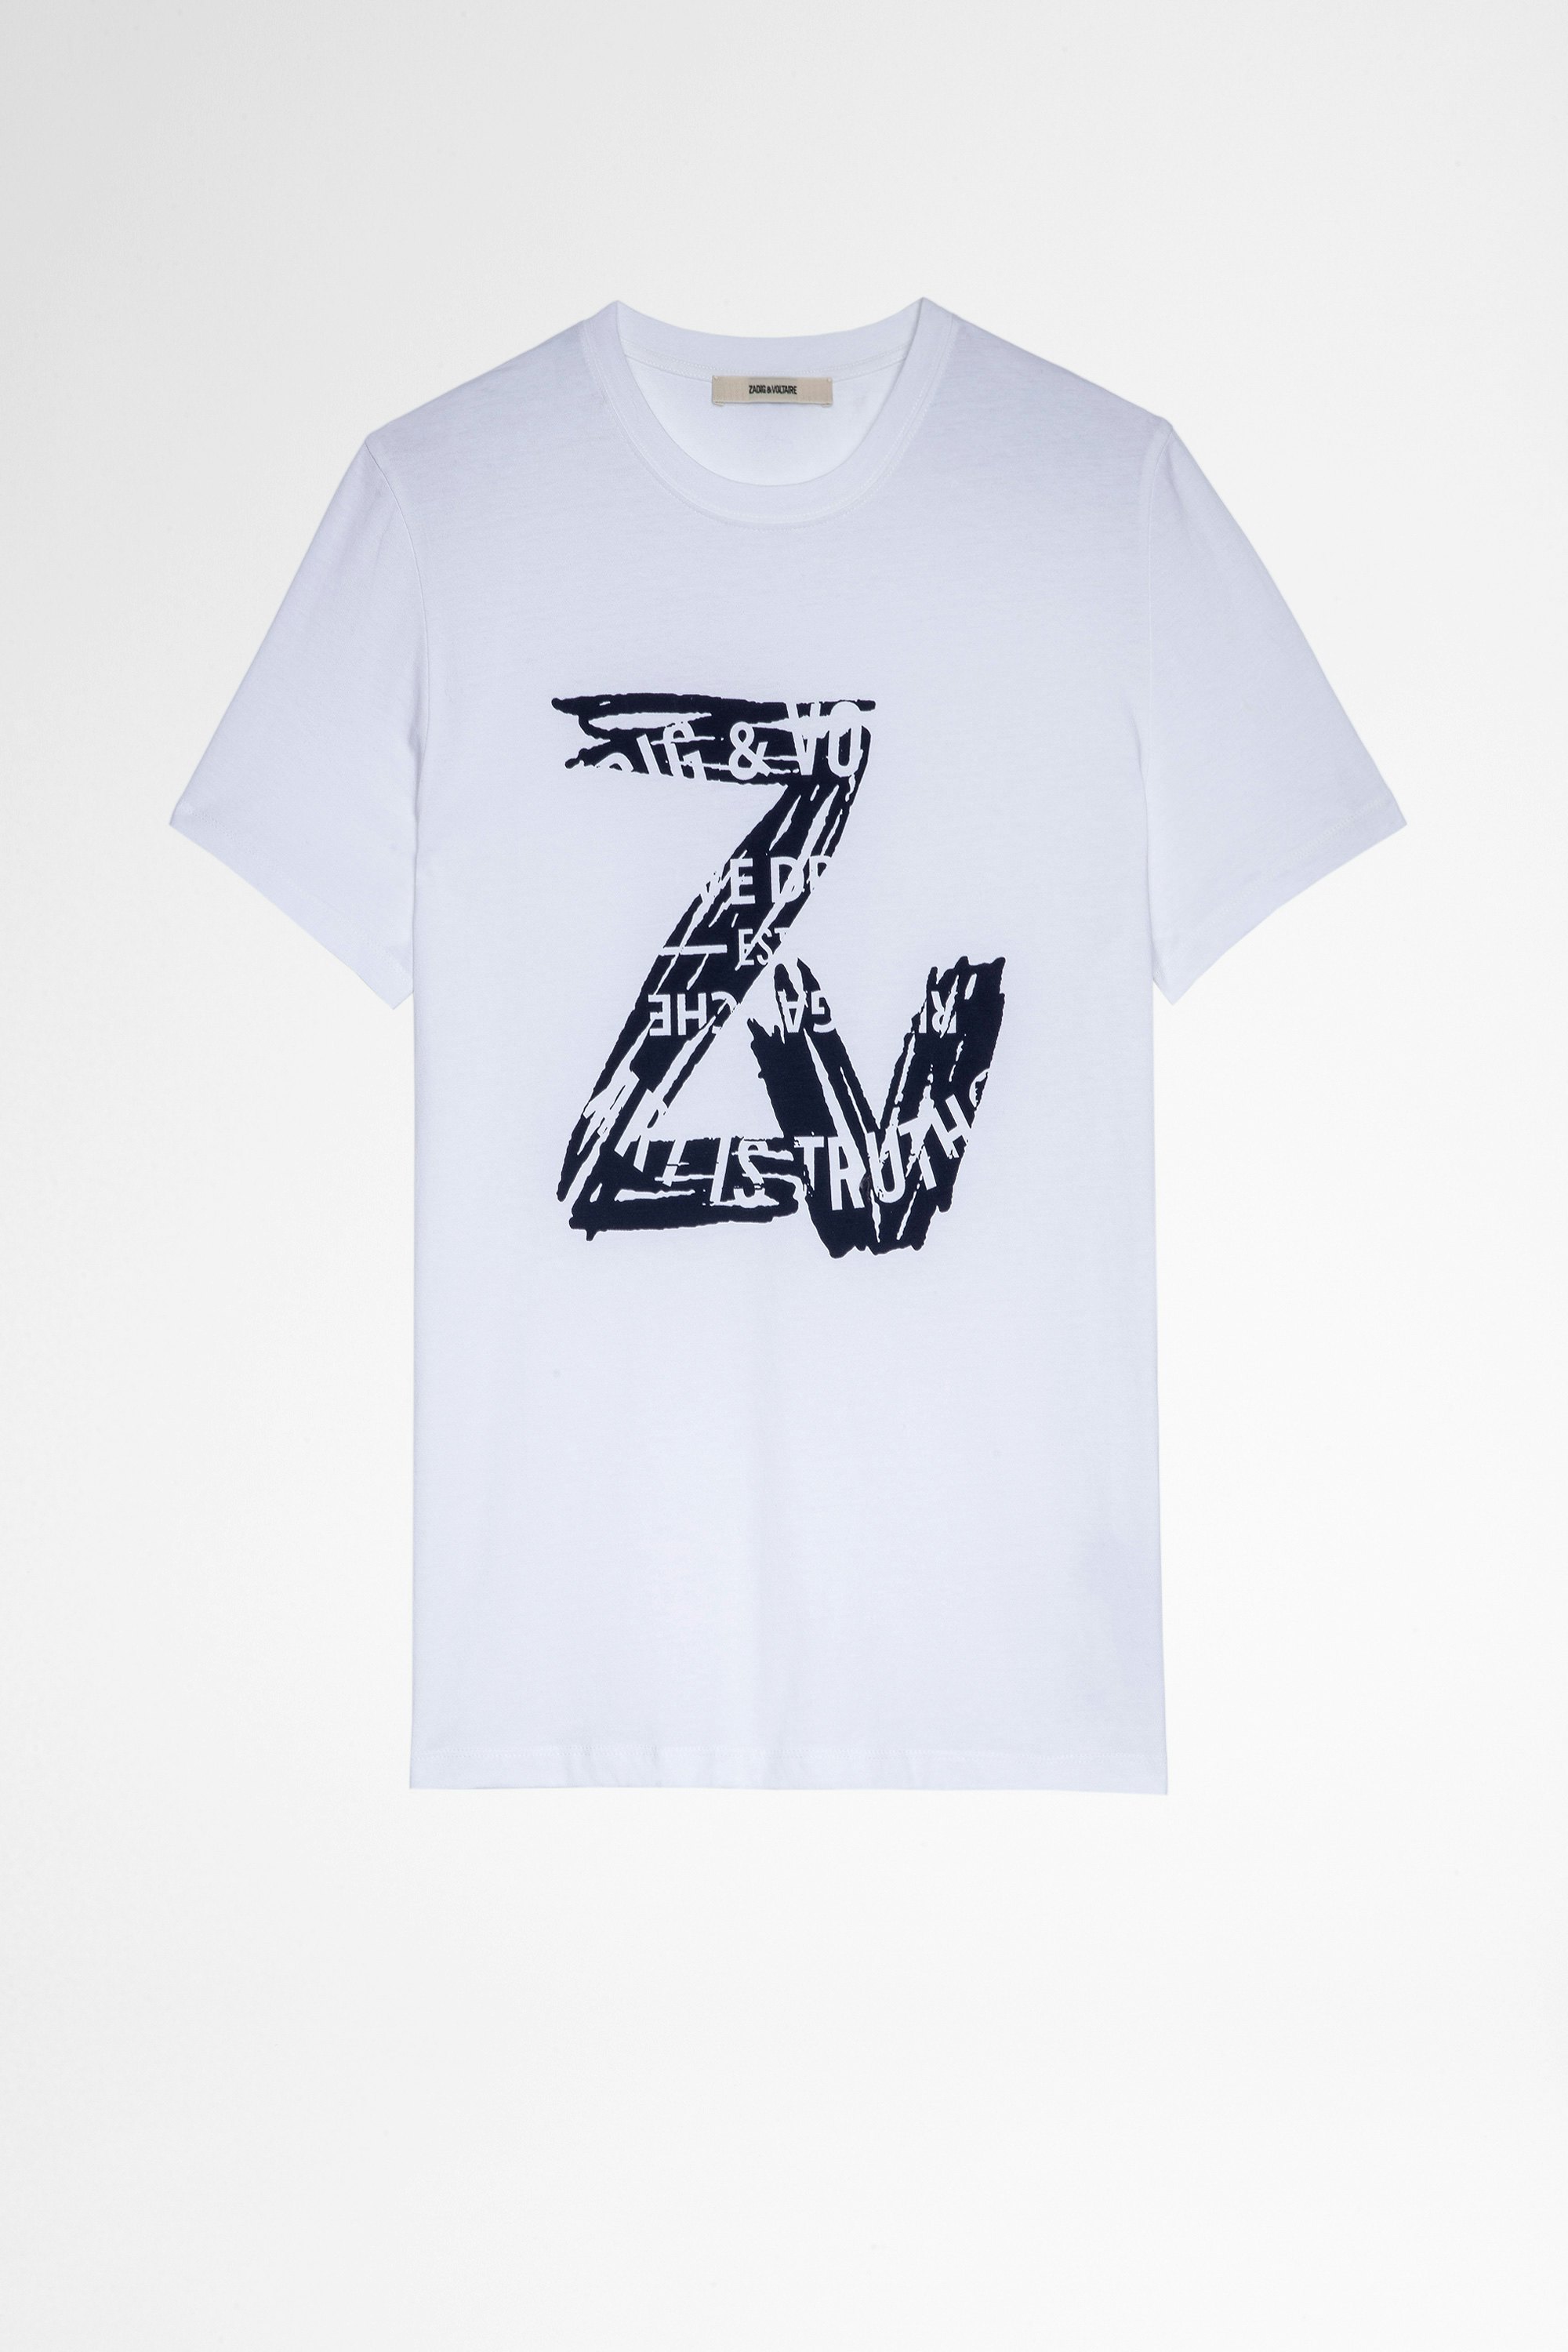 Tommy T-Shirt Men’s white cotton T-shirt